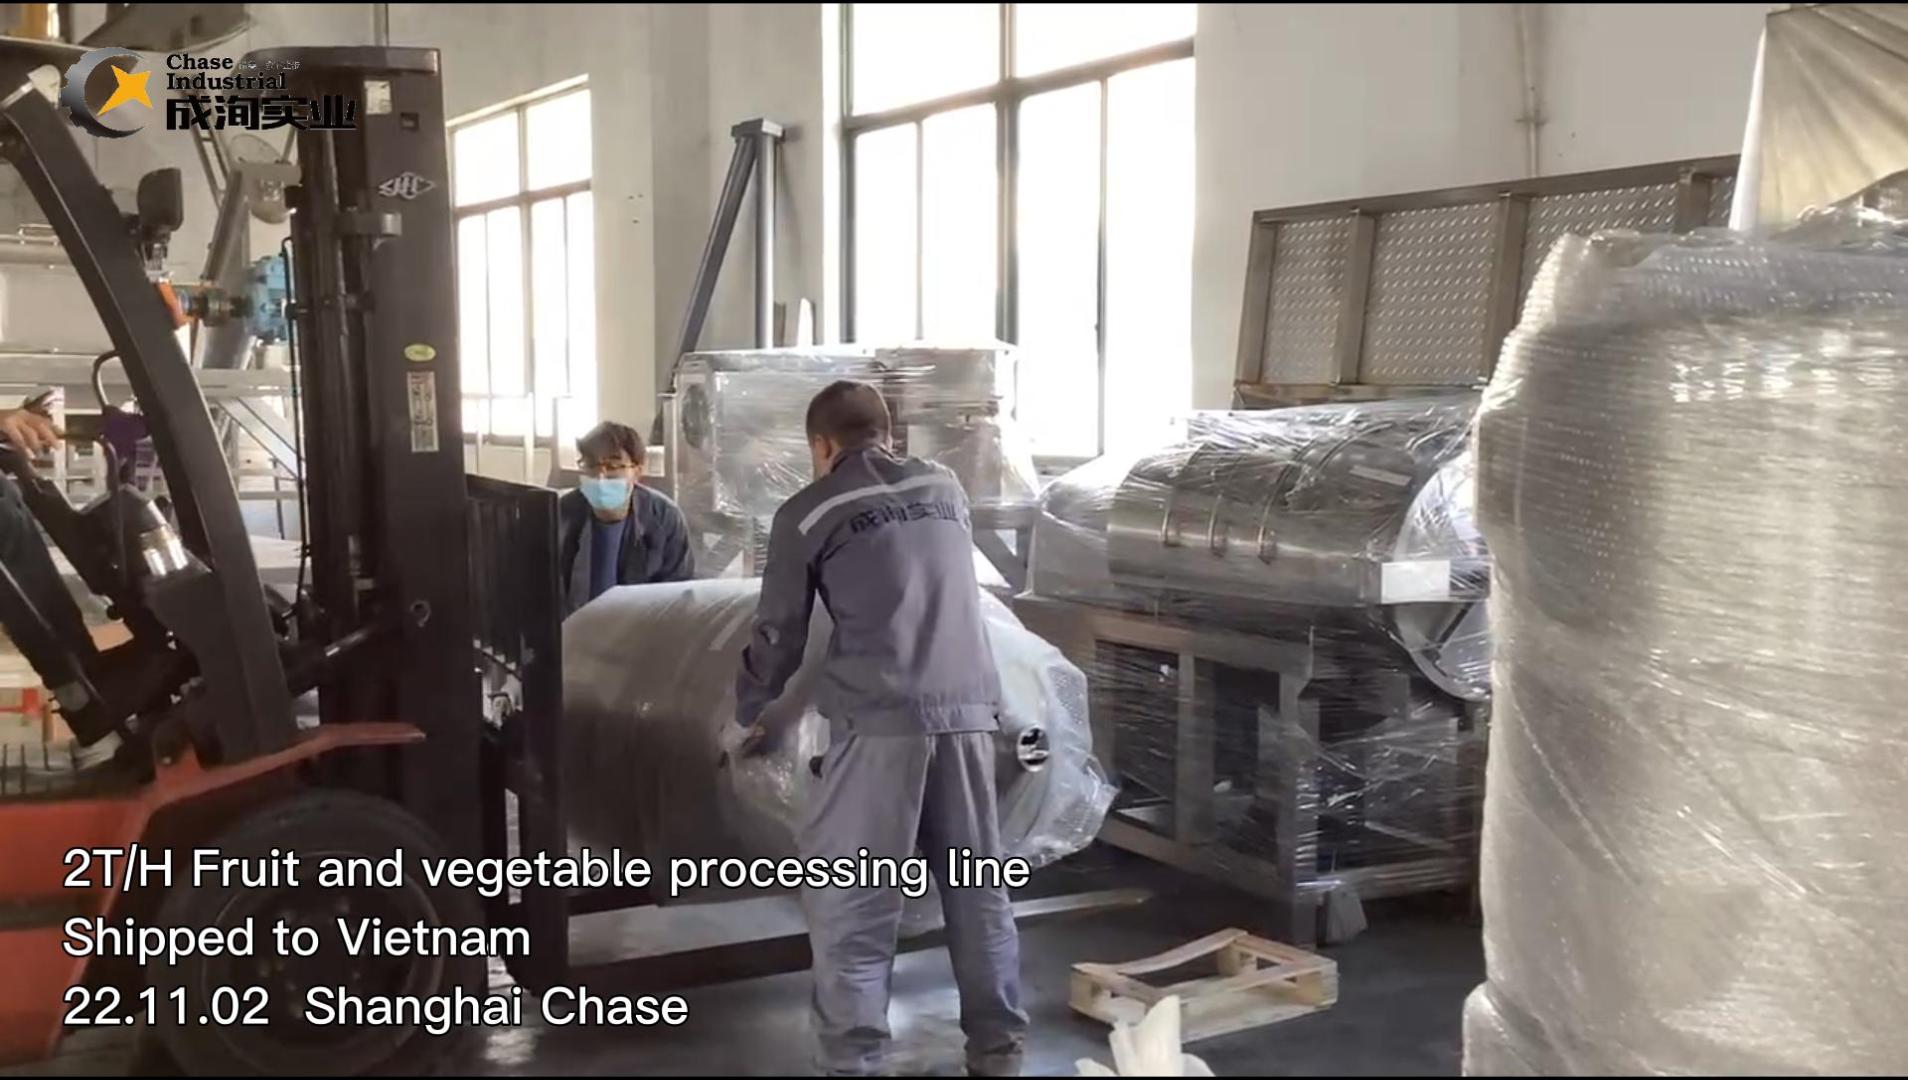 Línea de procesamiento de frutas y verduras de 2T/H, enviada a Vietnam